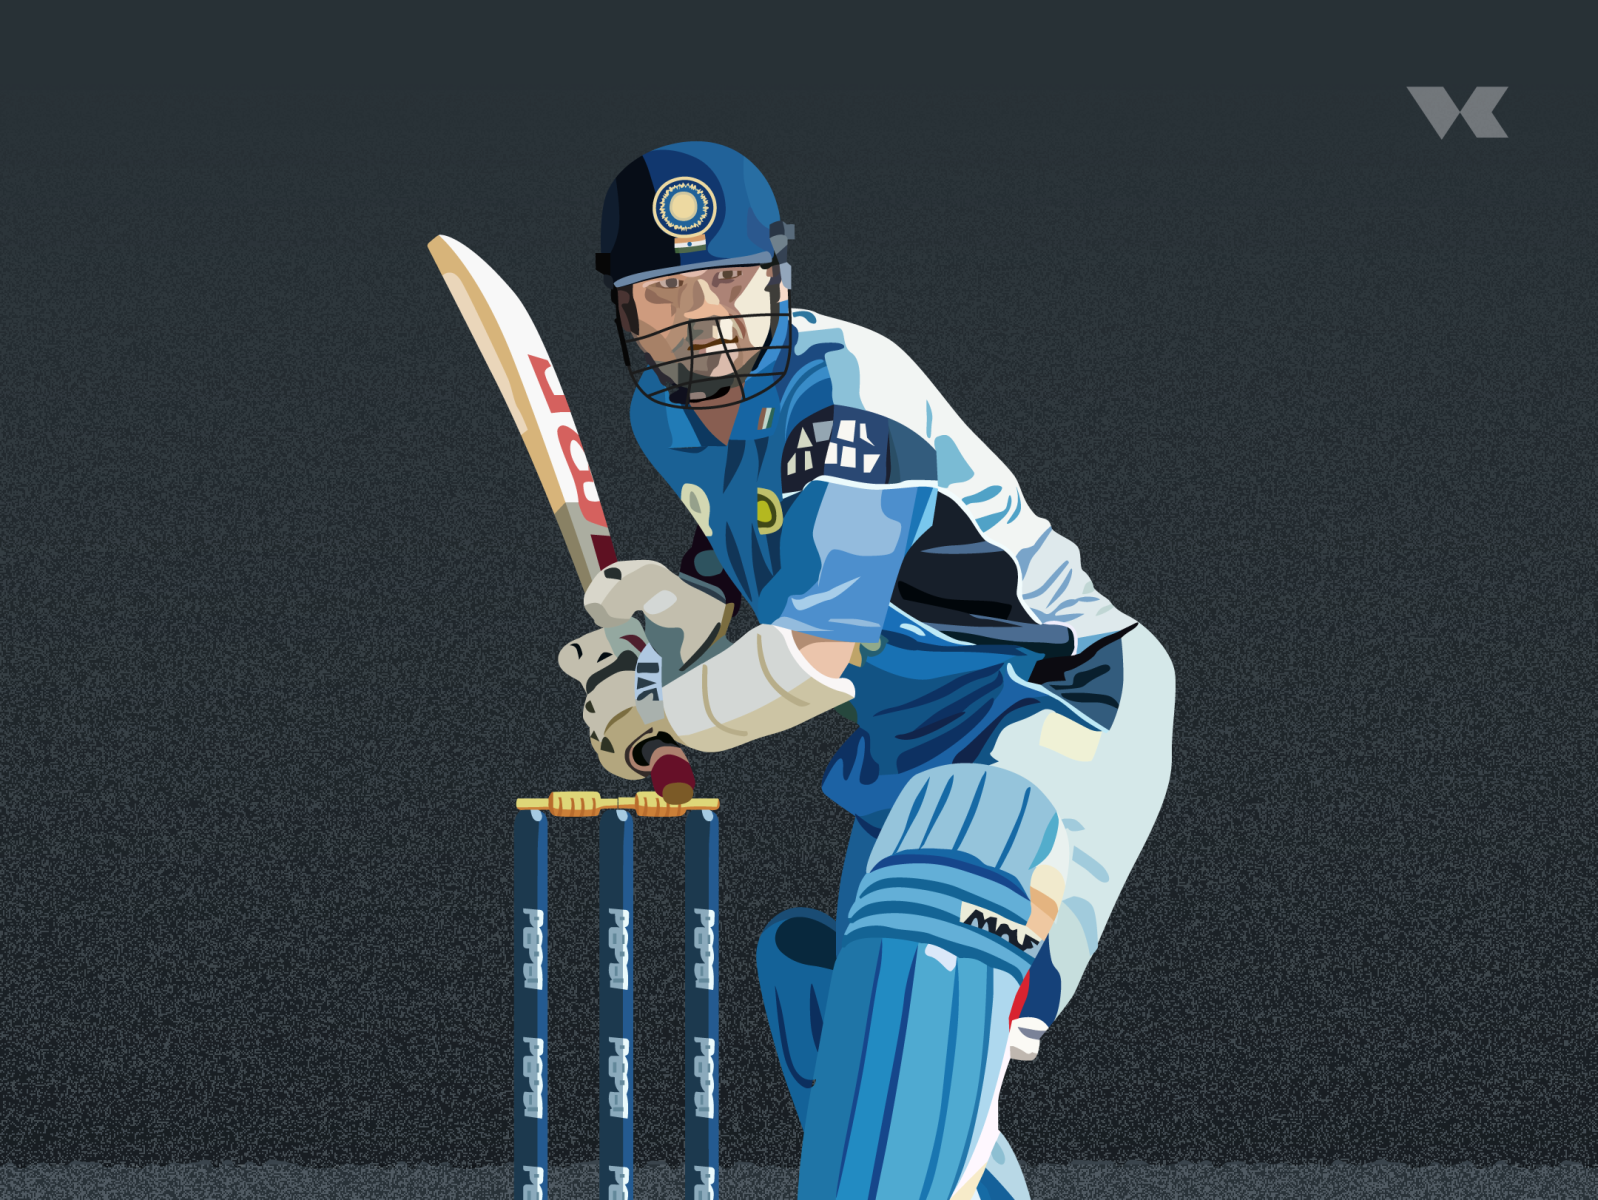 Cricket Bat Dimensions & Drawings | Dimensions.com